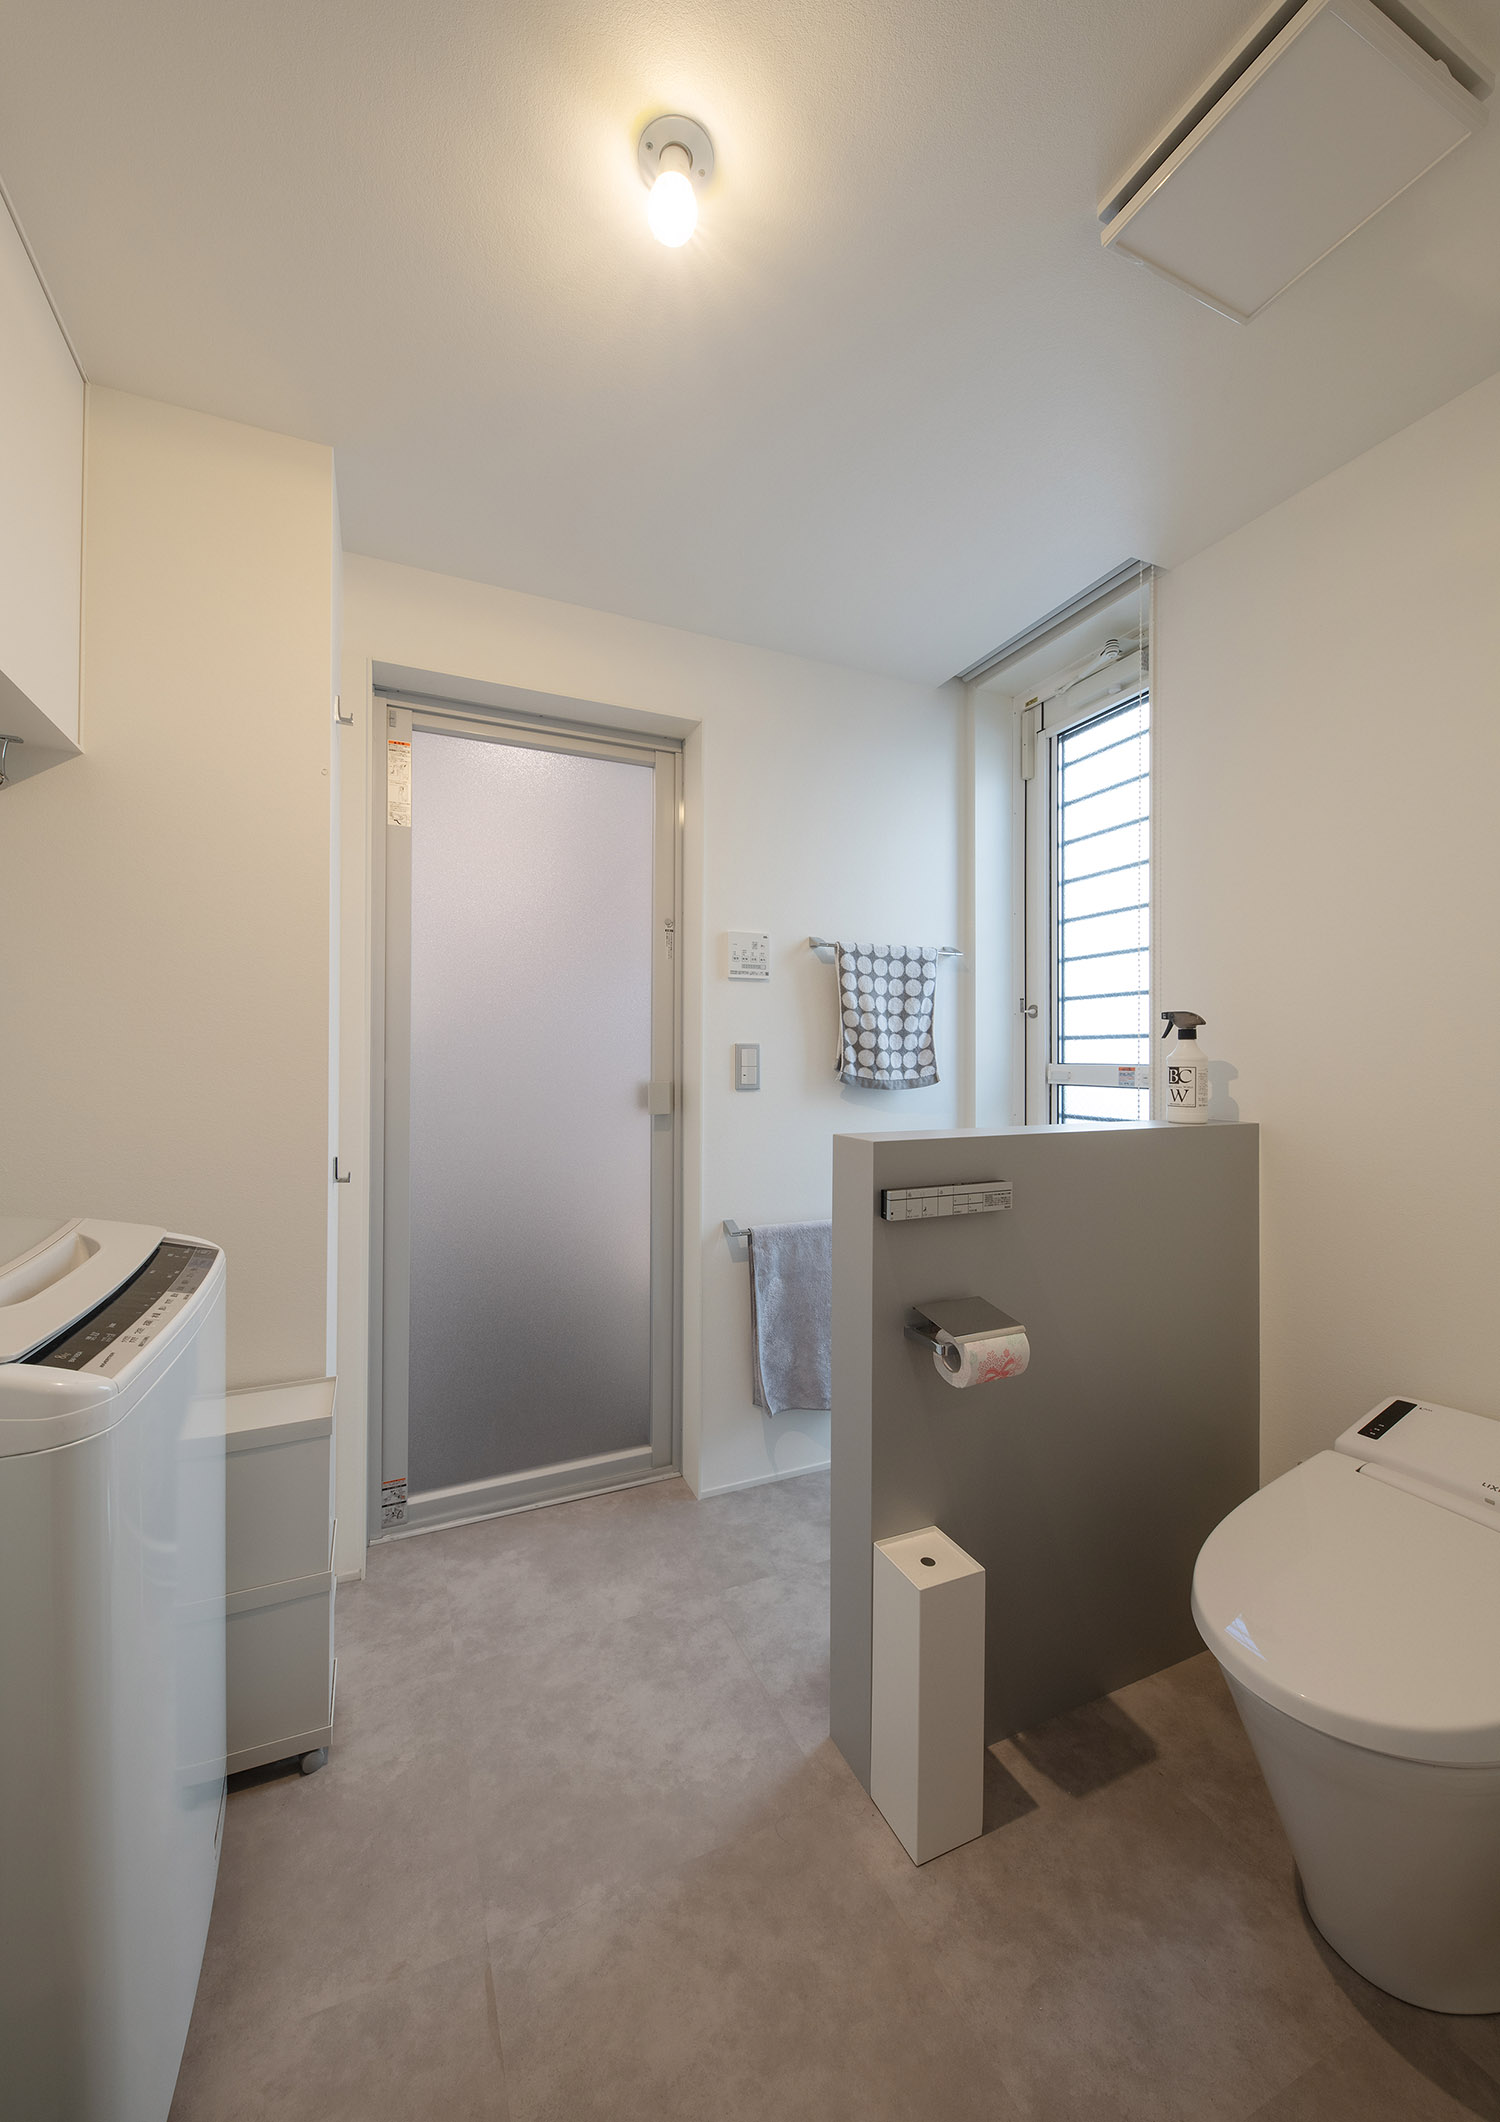 トイレと脱衣所が一体となった空間・デザイン住宅